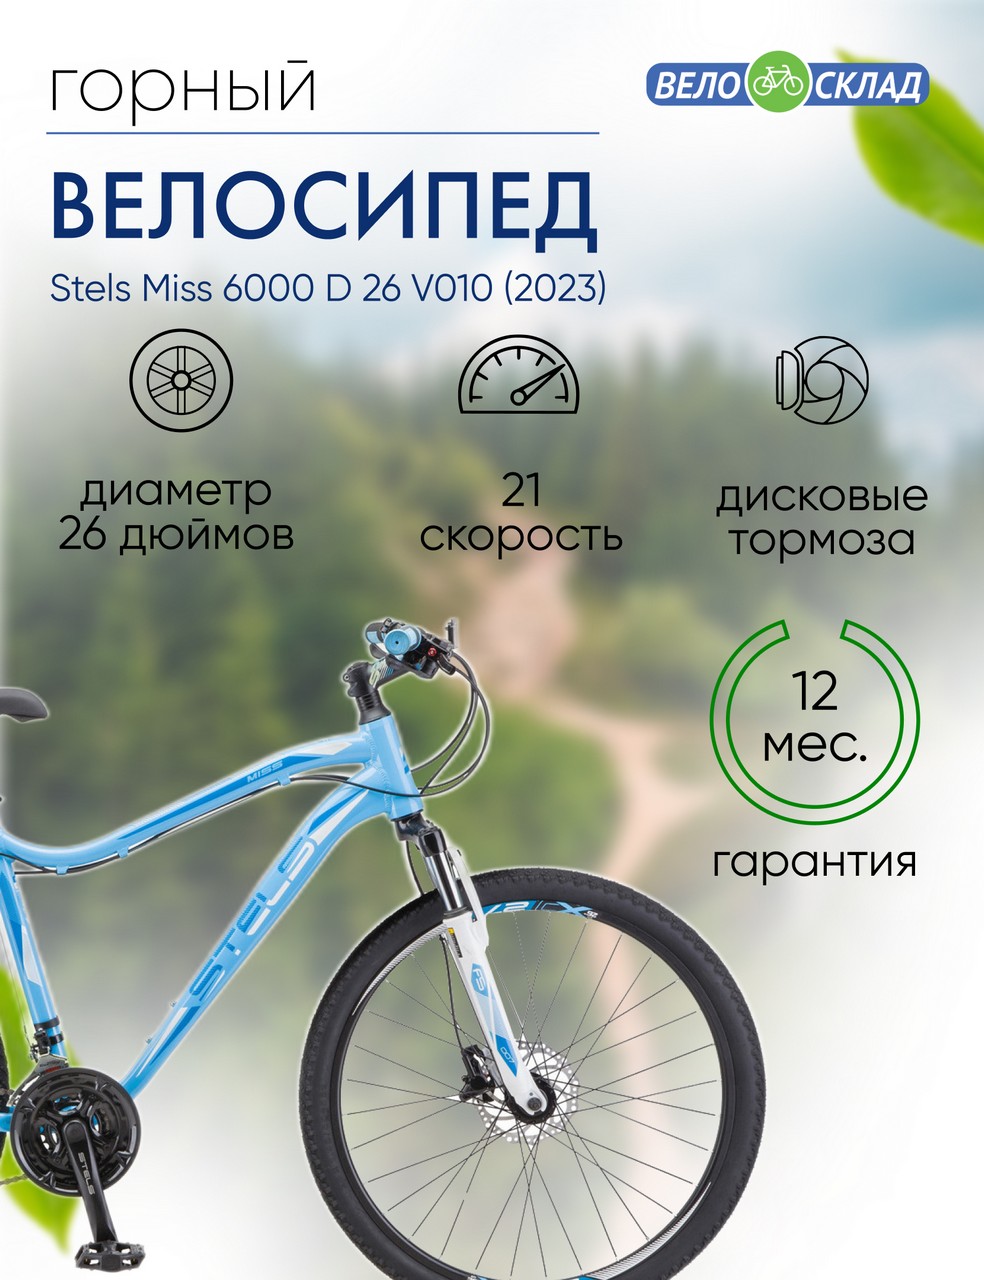 Женский велосипед Stels Miss 6000 D 26 V010, год 2023, цвет Голубой, ростовка 17